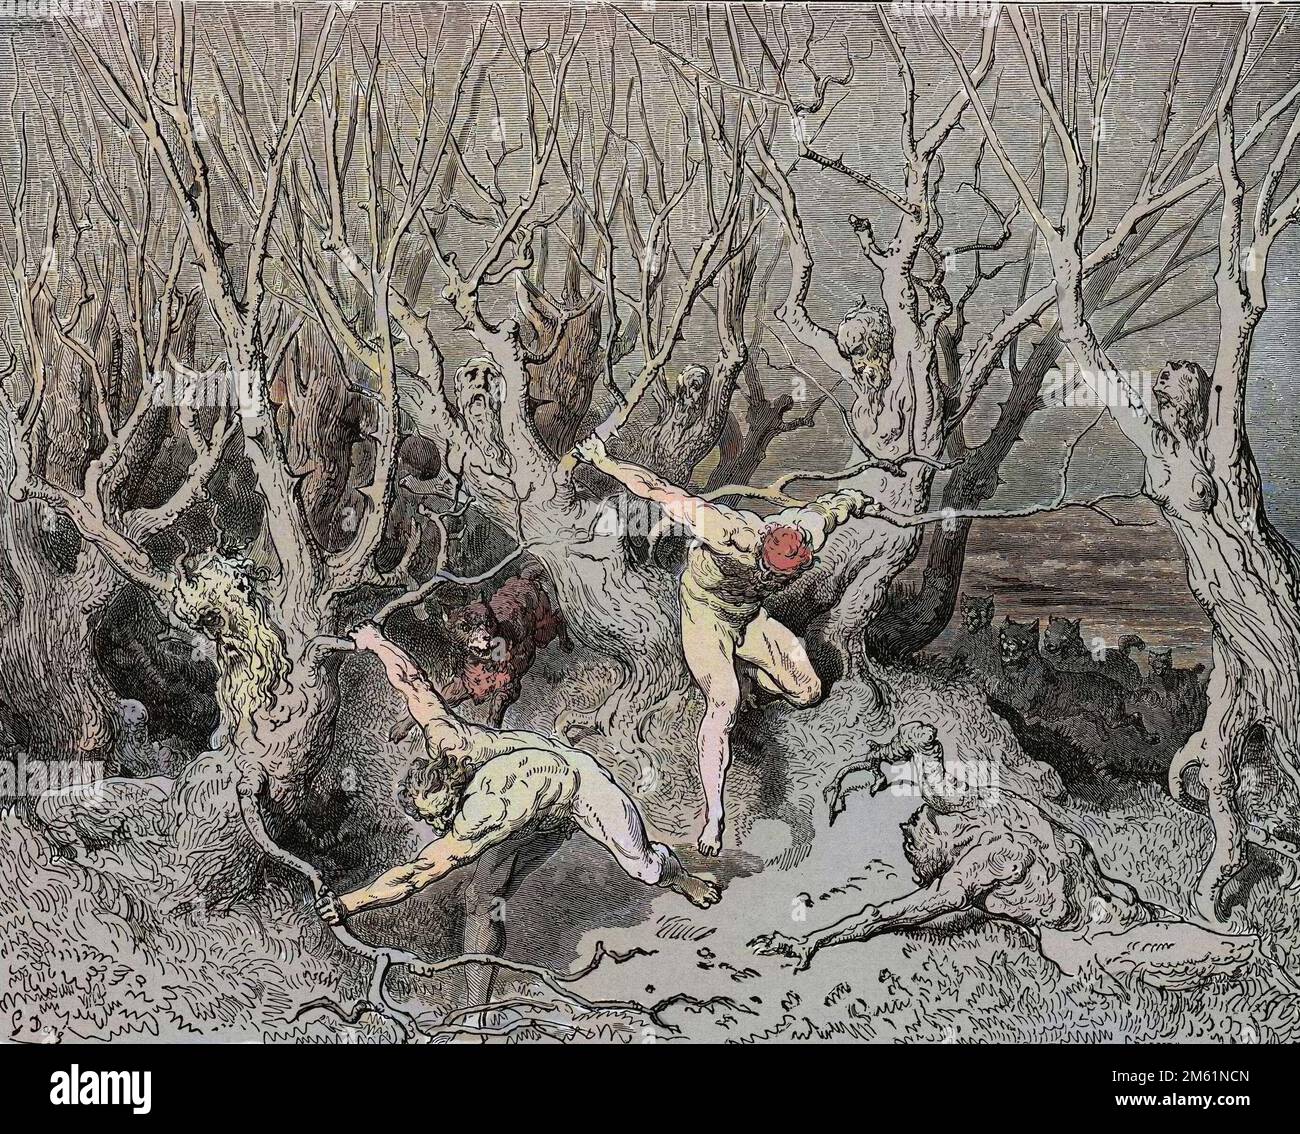 Bosque de los Suicidios, Wiki Dante's Inferno